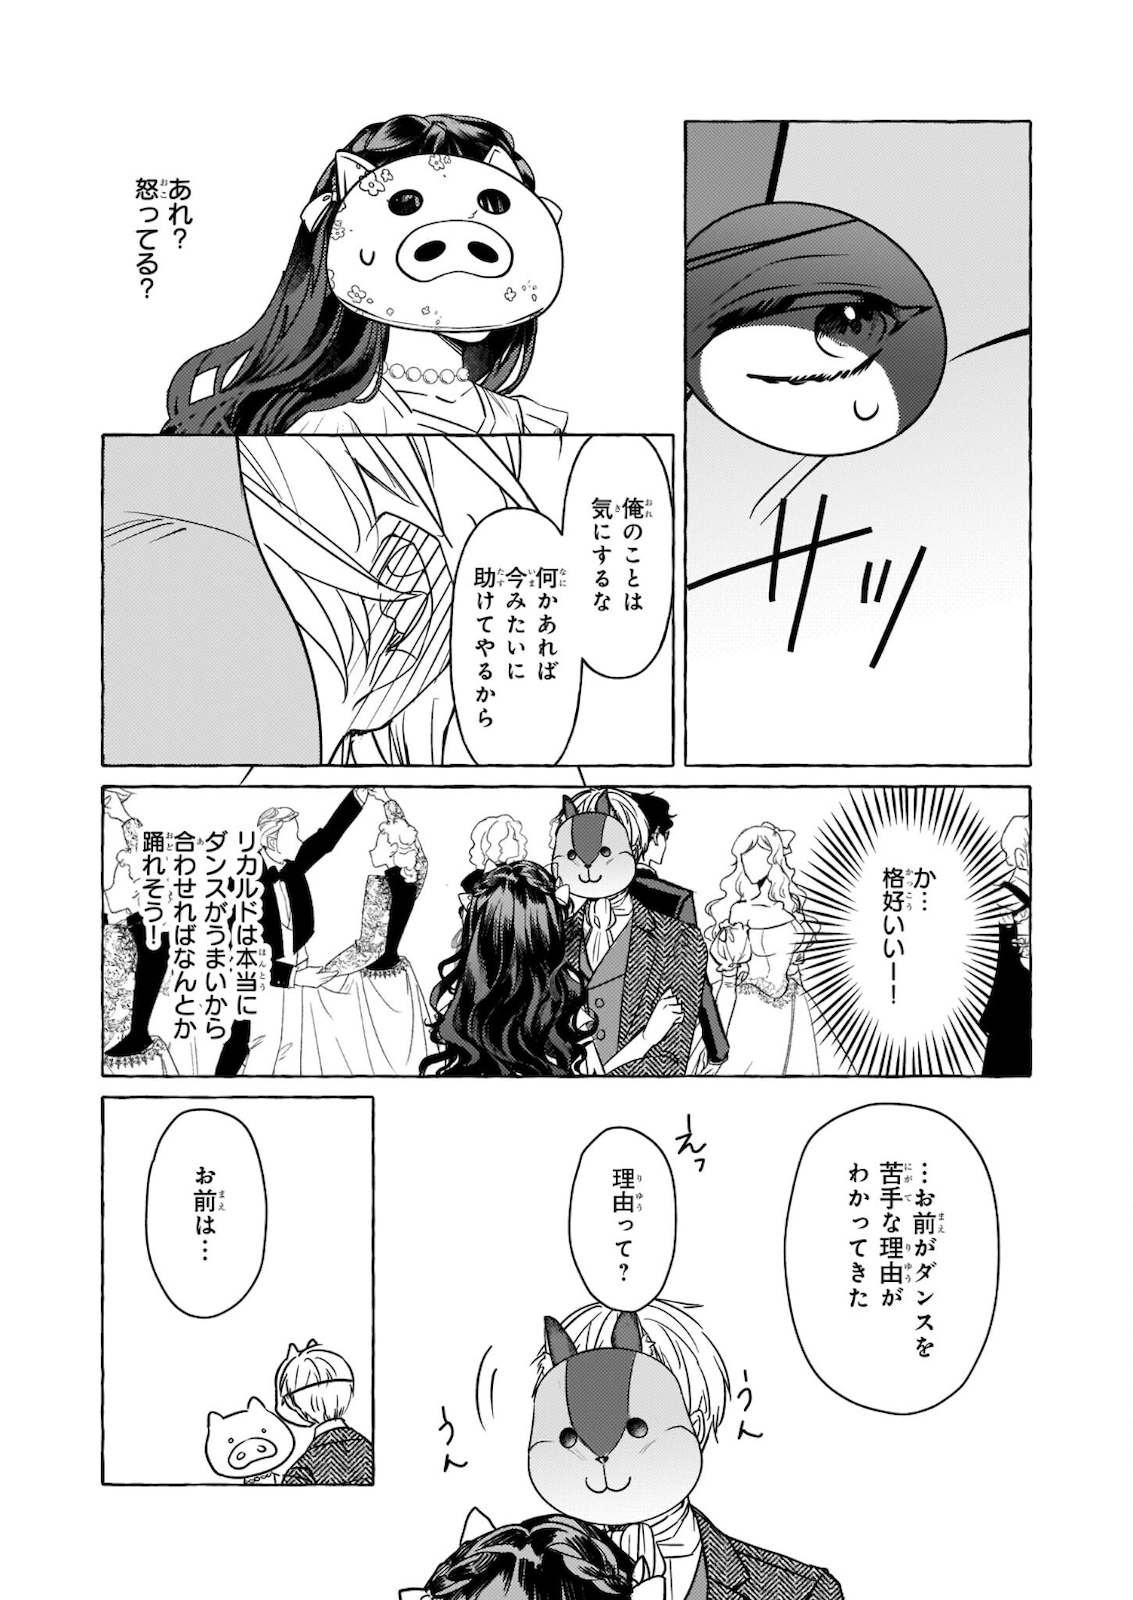 Tenseisaki ga Shoujo Manga no Shirobuta Reijou datta reBoooot! - Chapter 10.2 - Page 16